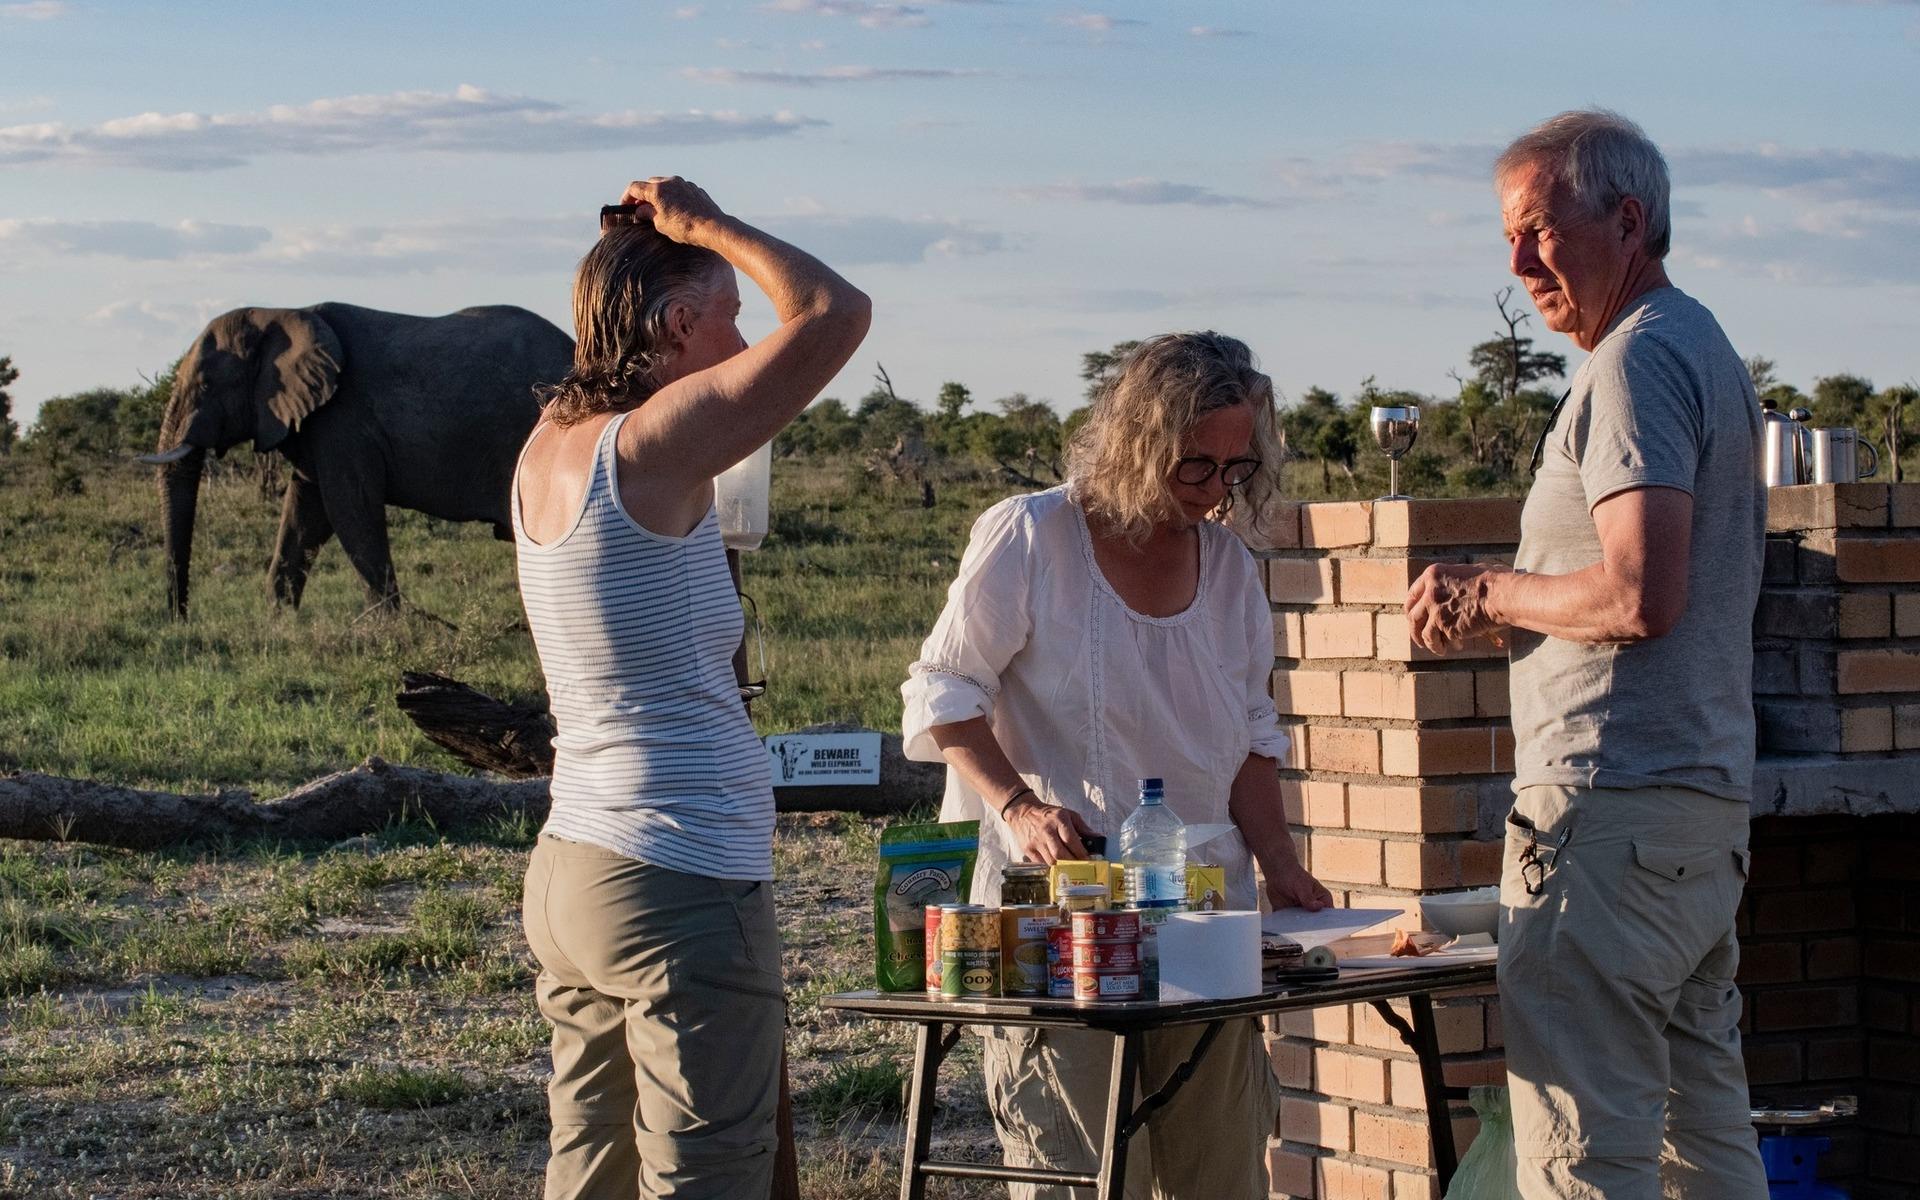 – Det kommer en elefant ropade vi. Vem bryr sig sade köksgänget. Det gäller att fokusera på rätt saker, skriver Marianne Brattberg som besökte Botswana.